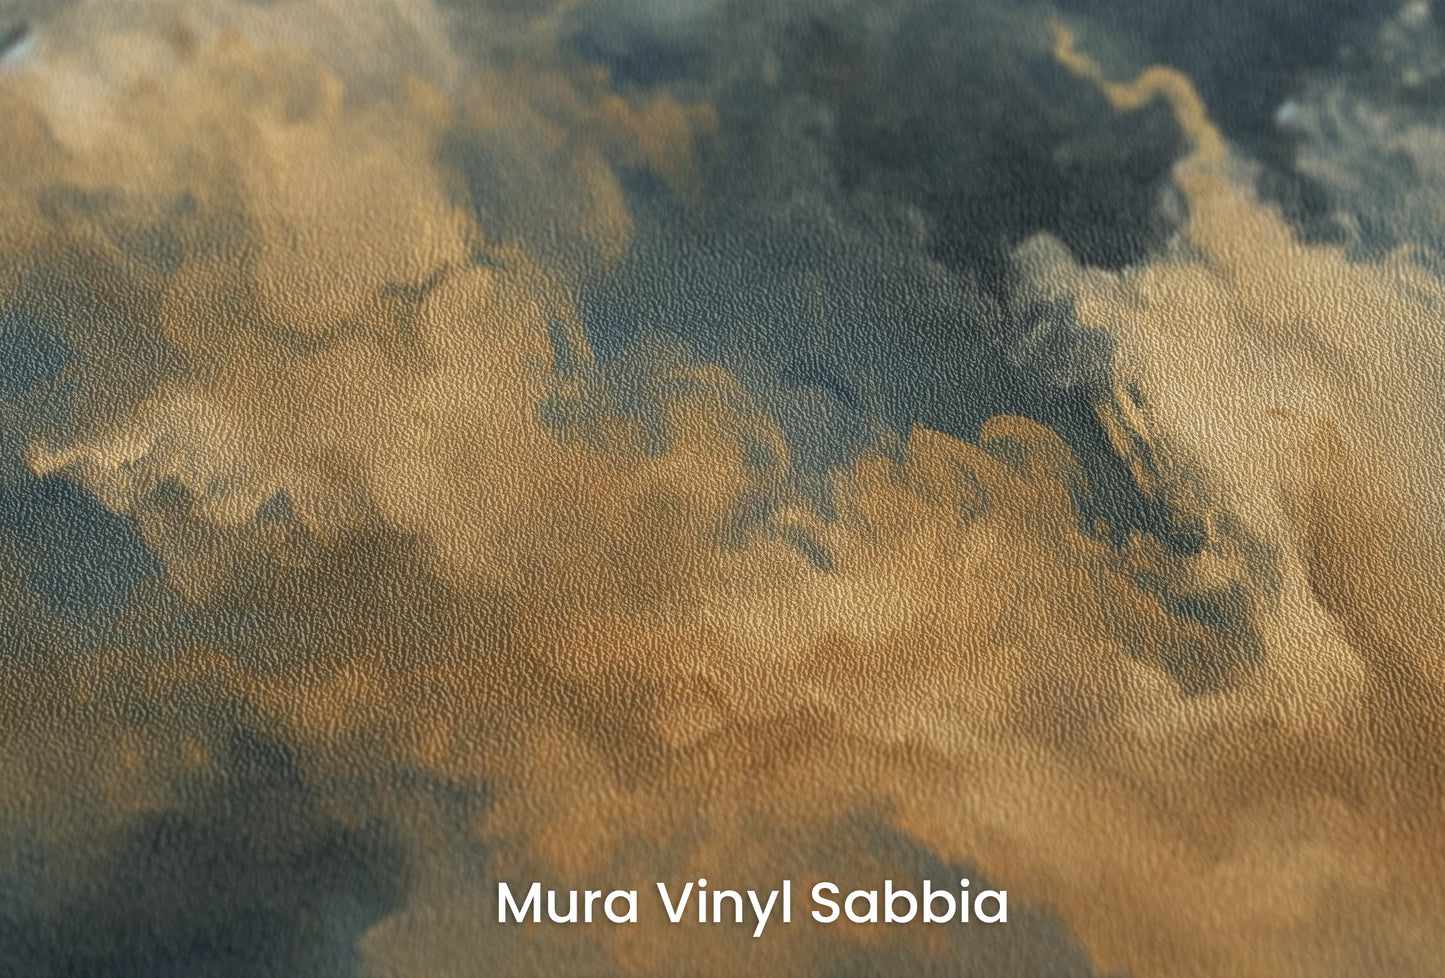 Zbliżenie na artystyczną fototapetę o nazwie Storm's Embrace na podłożu Mura Vinyl Sabbia struktura grubego ziarna piasku.